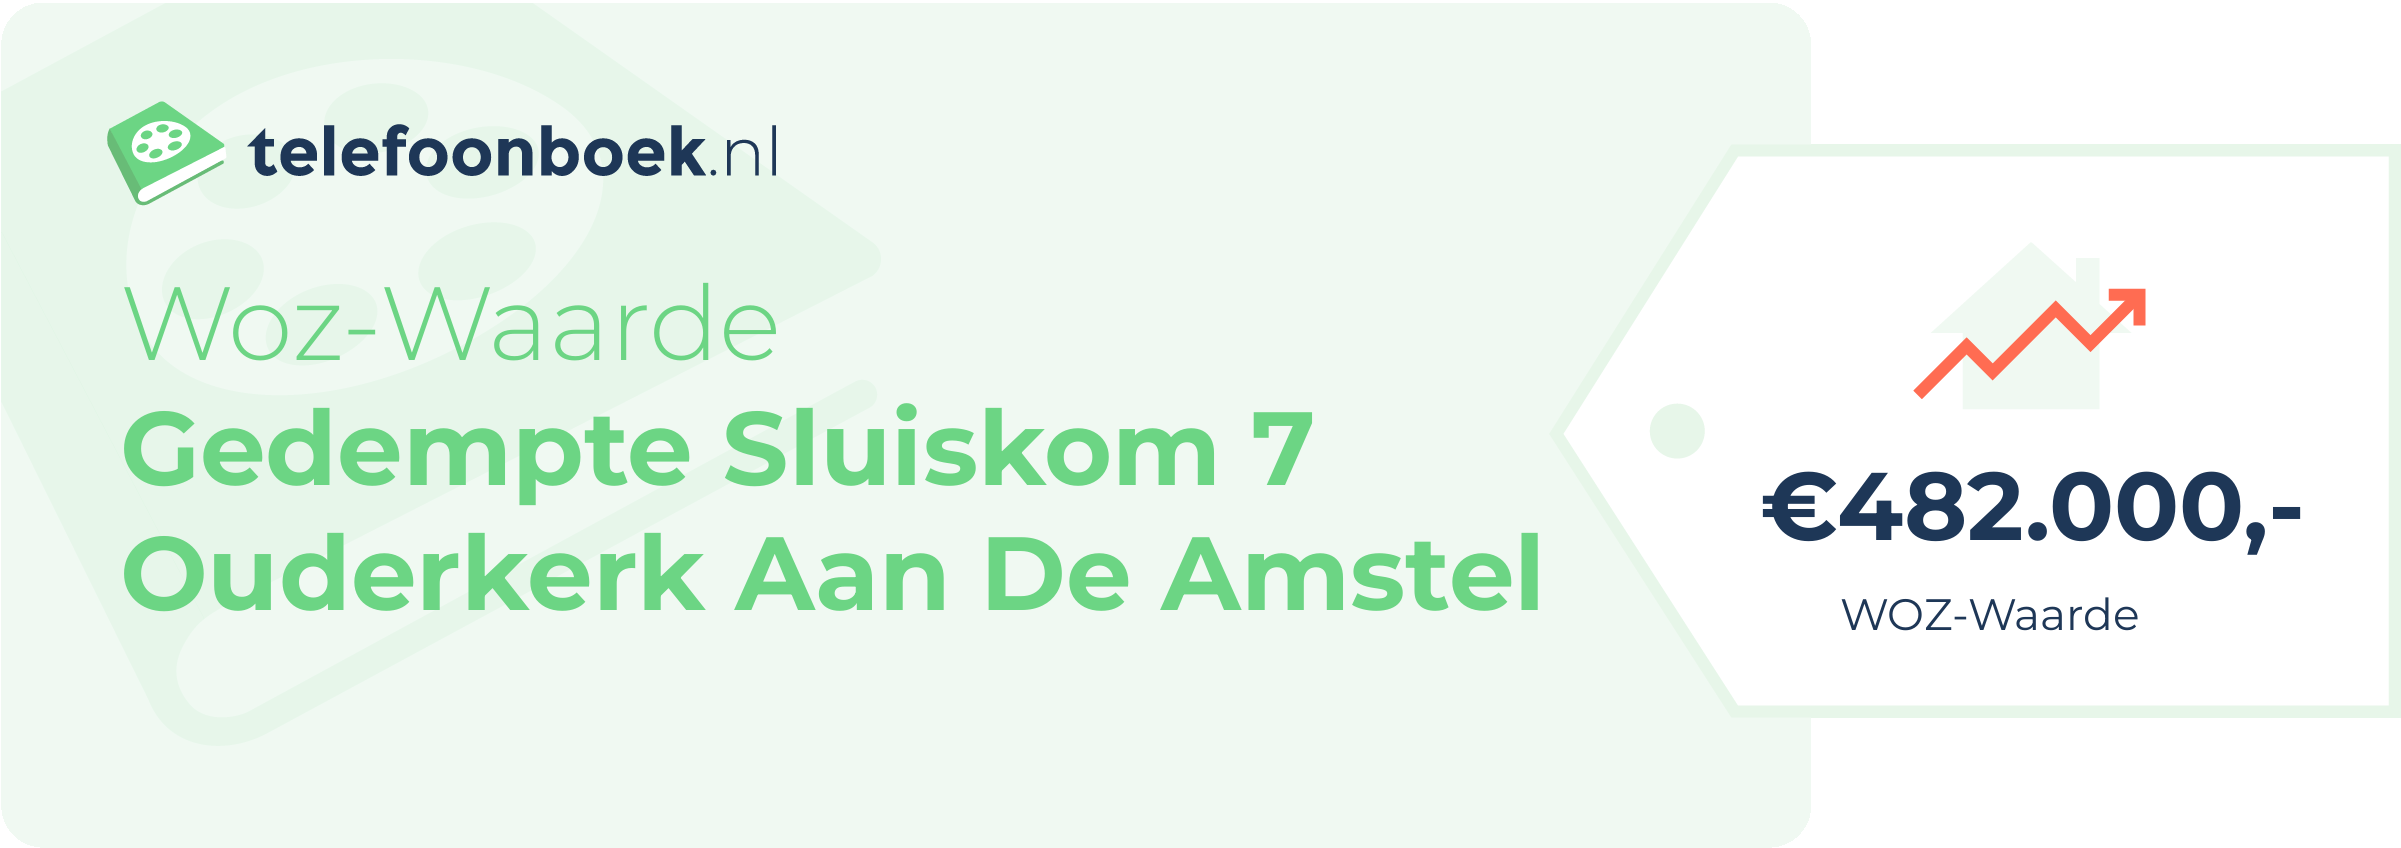 WOZ-waarde Gedempte Sluiskom 7 Ouderkerk Aan De Amstel